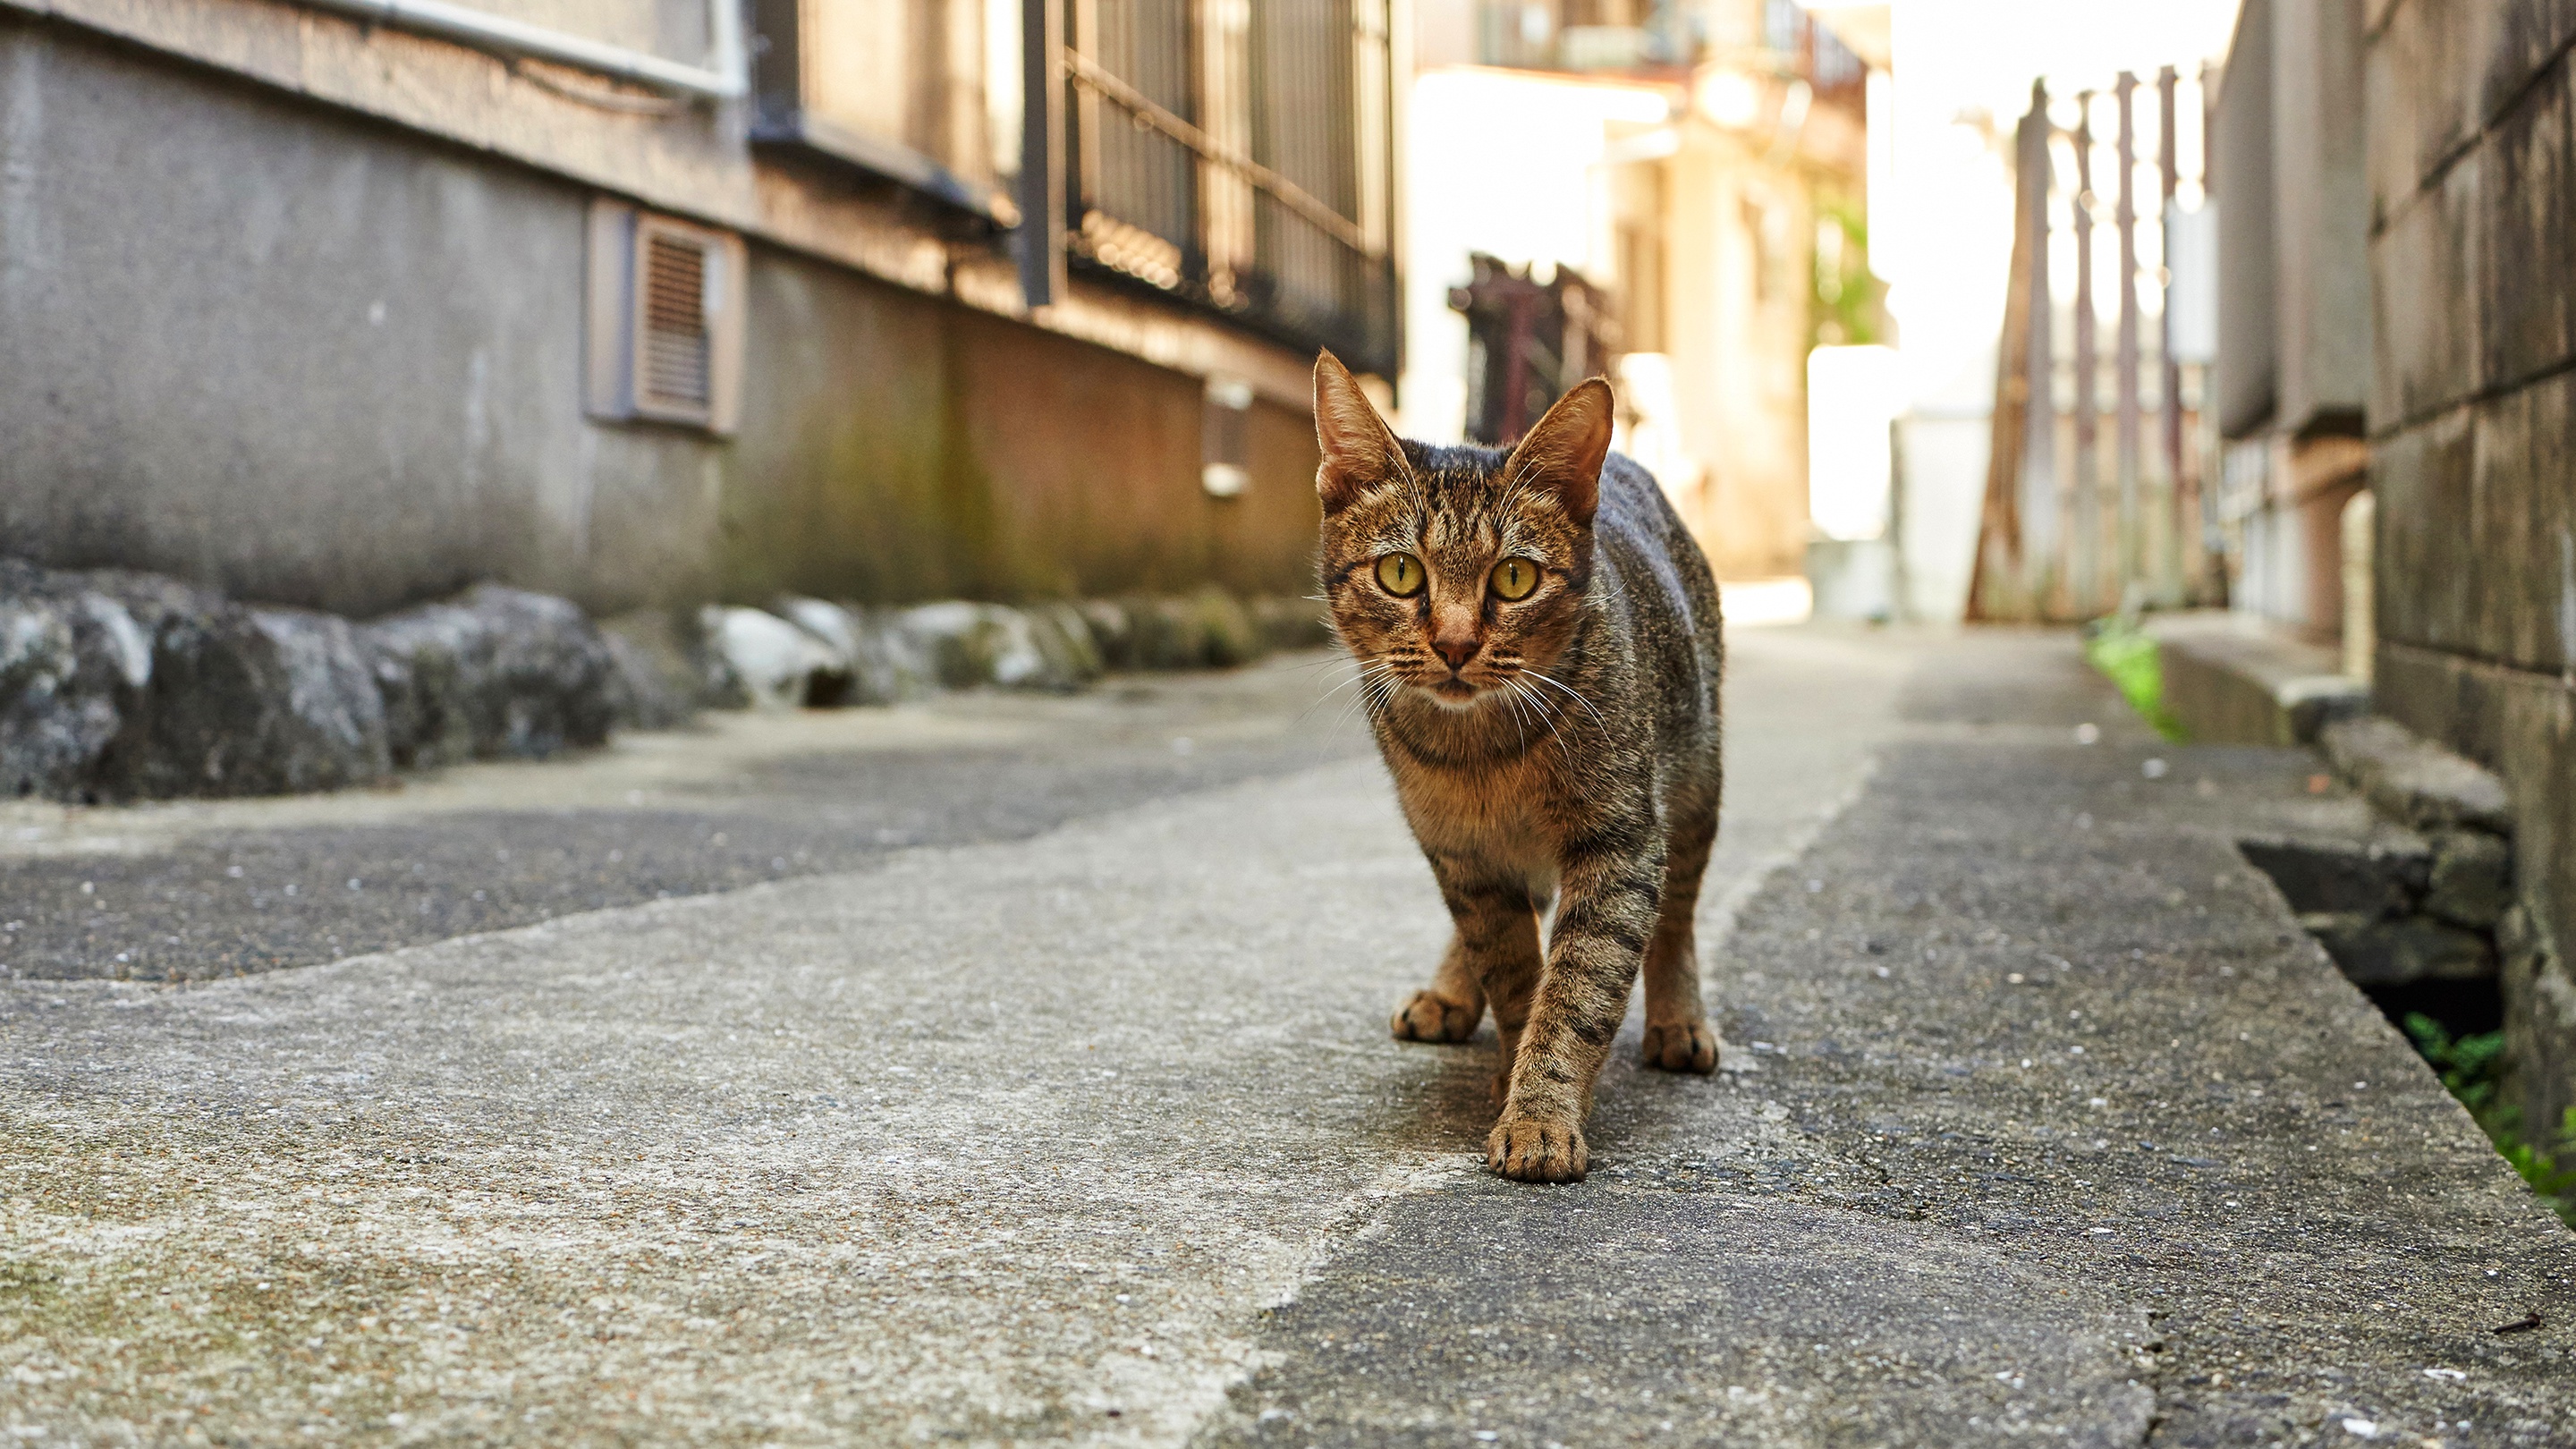 Как коты находят дорогу домой – 3 основных помощника животного для ориентировки в пространстве